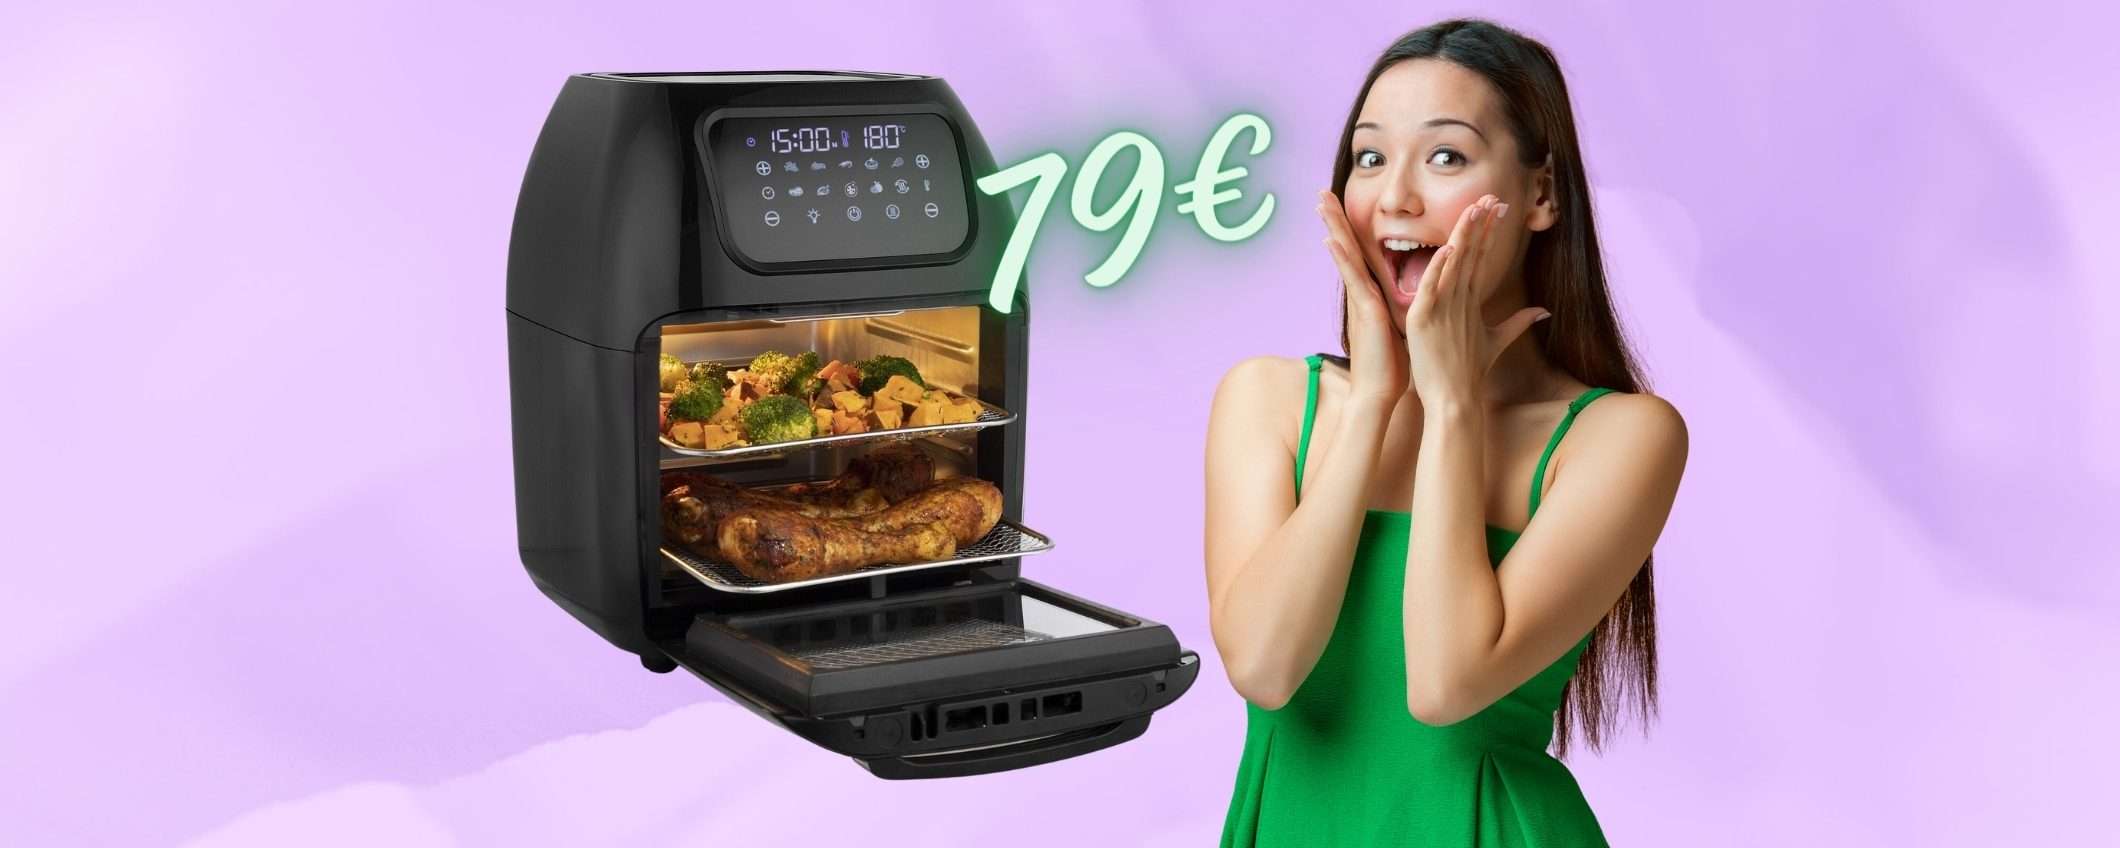 Friggitrice ad aria SUPER da 10 Litri a SOLI 79€: cucina sana e veloce